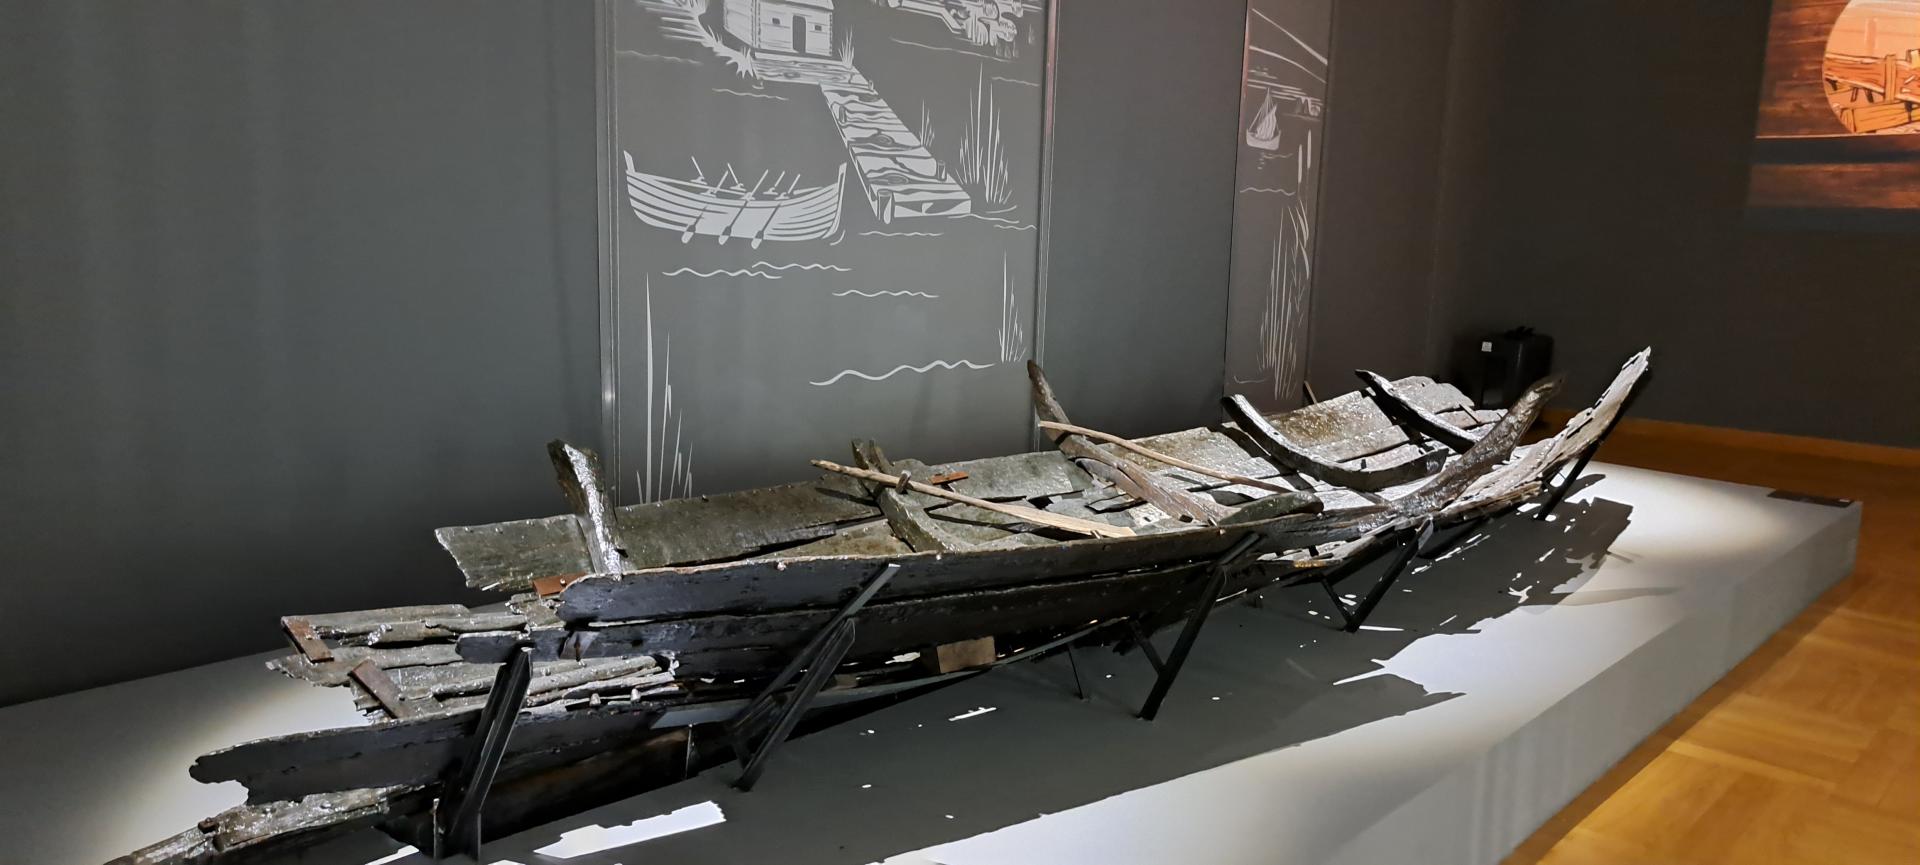 szczątki łodzi wczesnośredniowiecznej na ekspozycji muzealnej